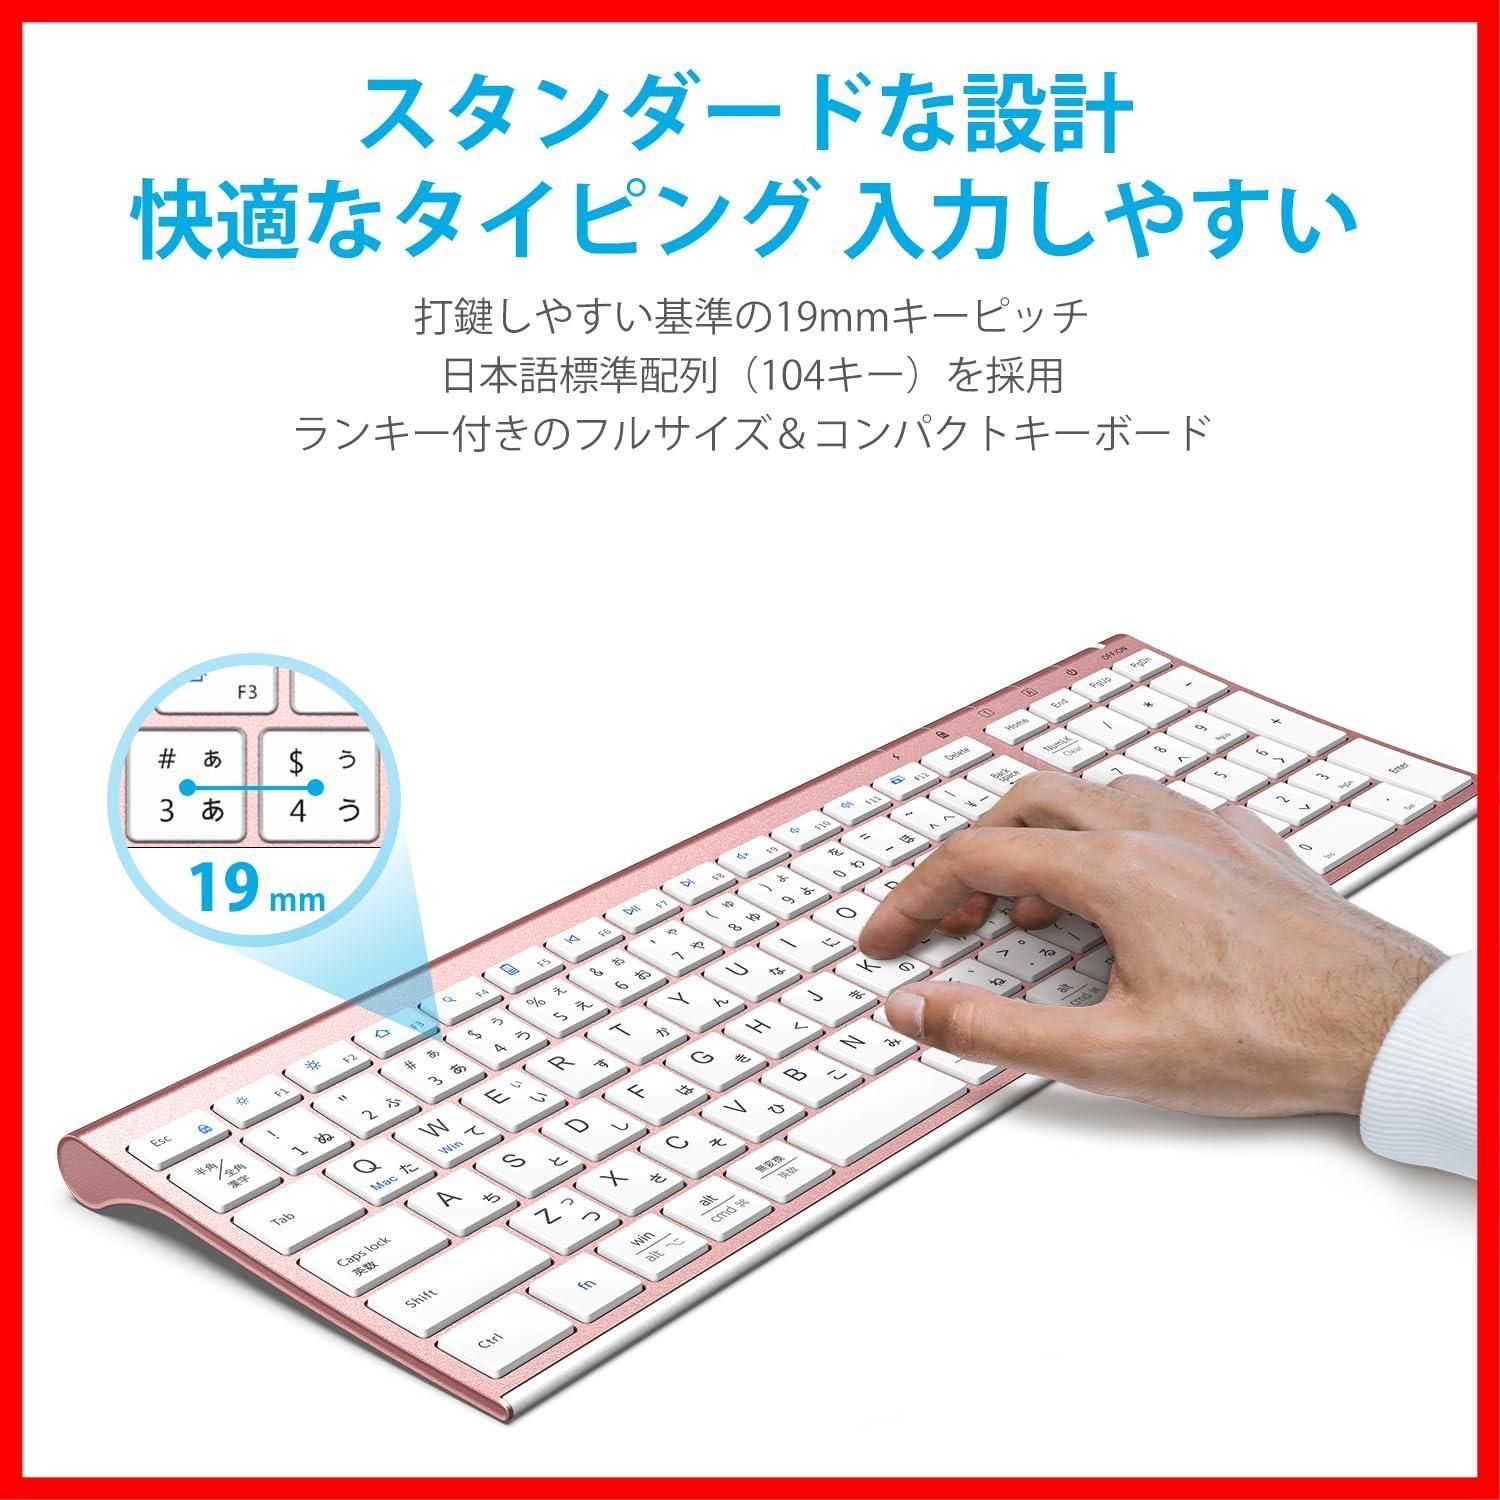 迅速発送】iClever キーボードワイヤレスキーボードマウスセット日本語